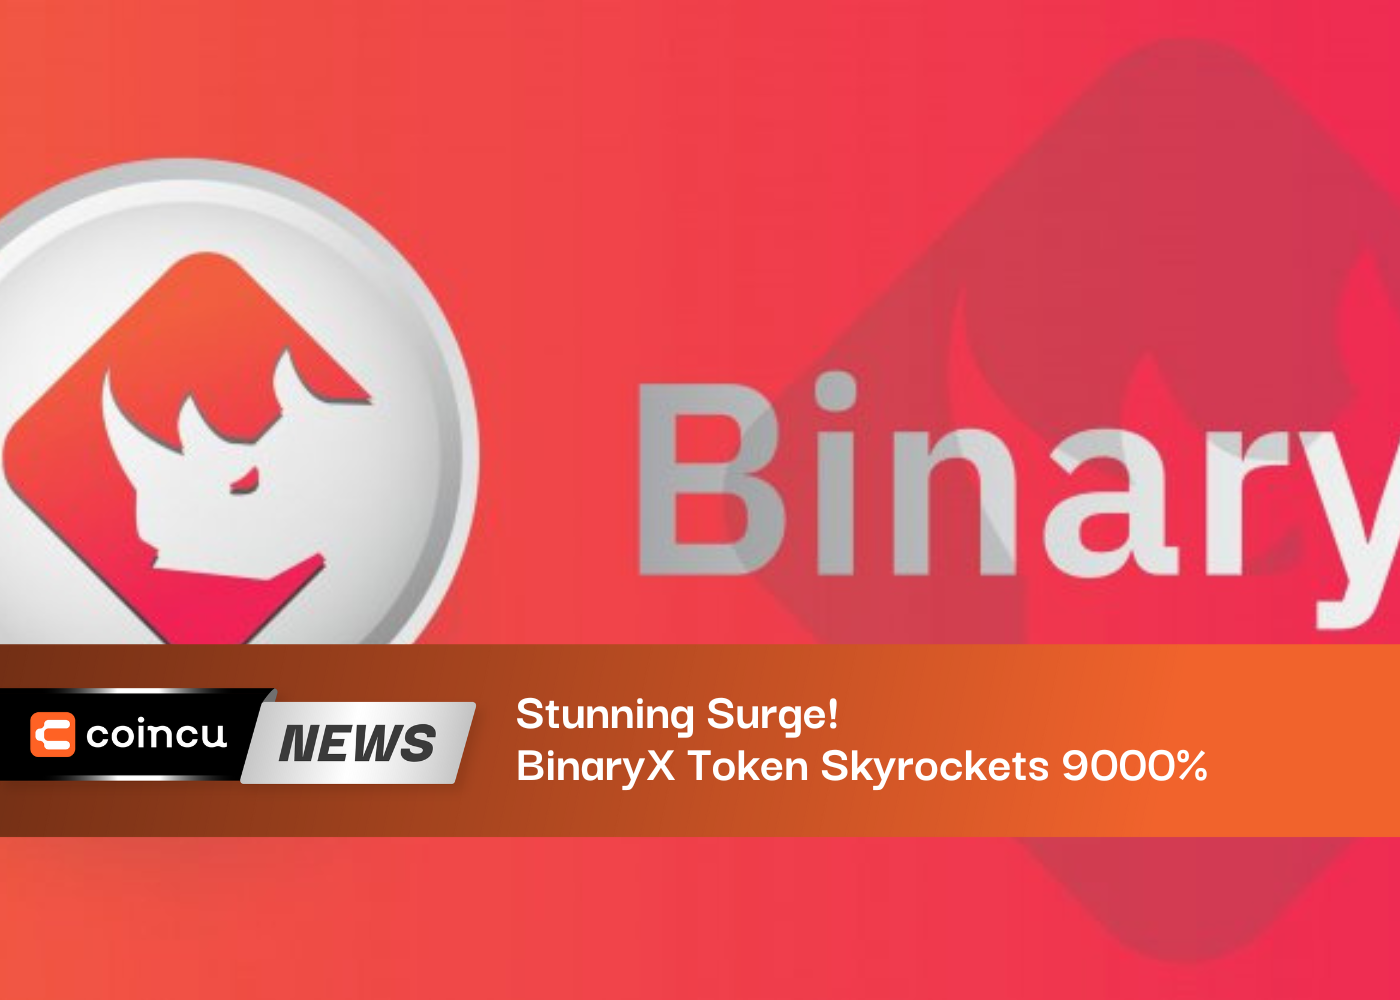 BinaryX Token Skyrockets 9000